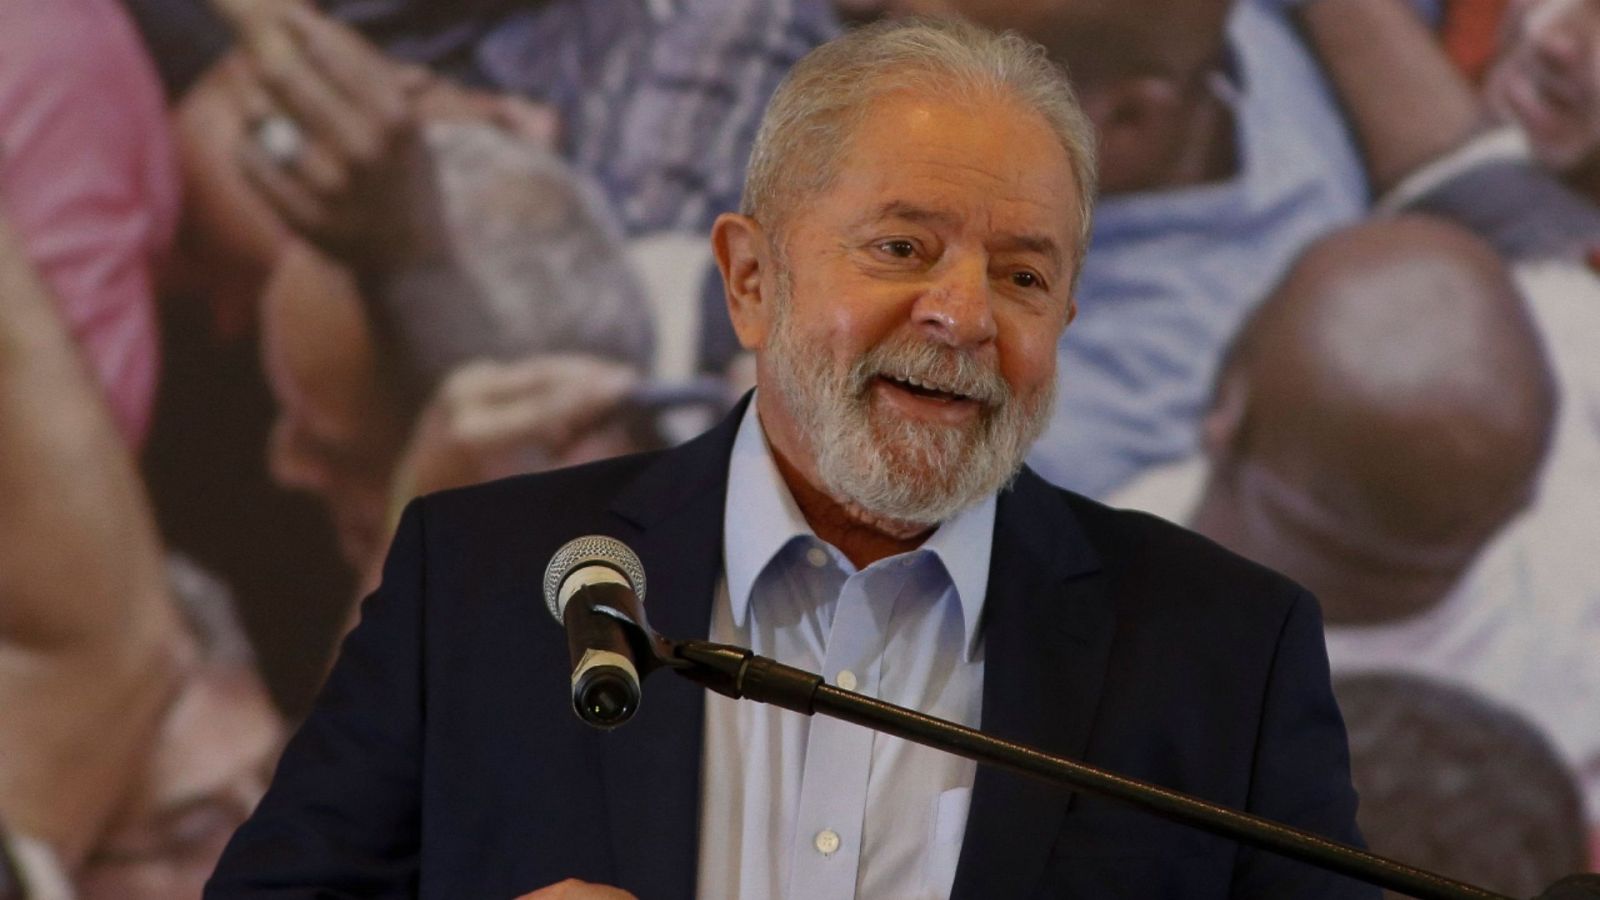 Imagen de archivo del 10 de marzo de 2021 del expresidente brasileño Luiz Inácio Lula da Silva durante una rueda de prensa en la sede del sindicato de trabajadores del metal en Sao Paulo, Brasil.